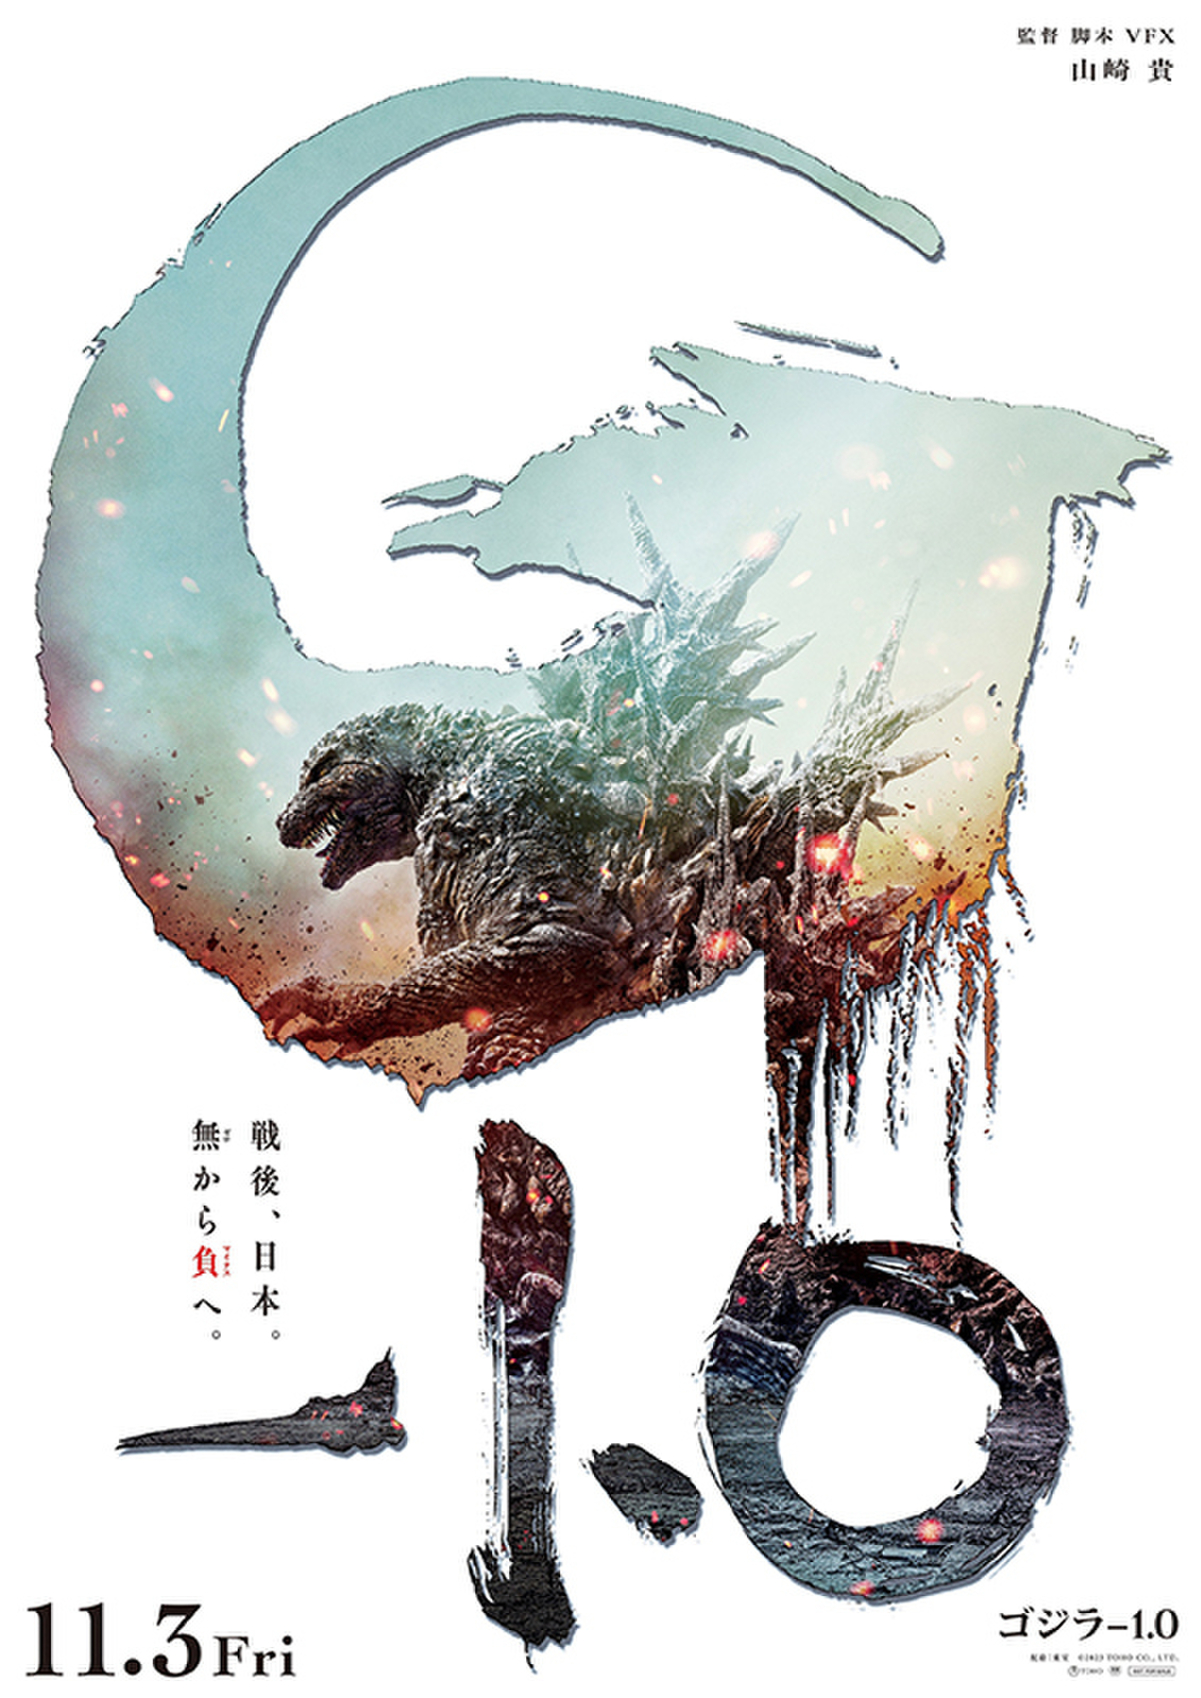 「ゴジラ-1.0」Japanese Poster